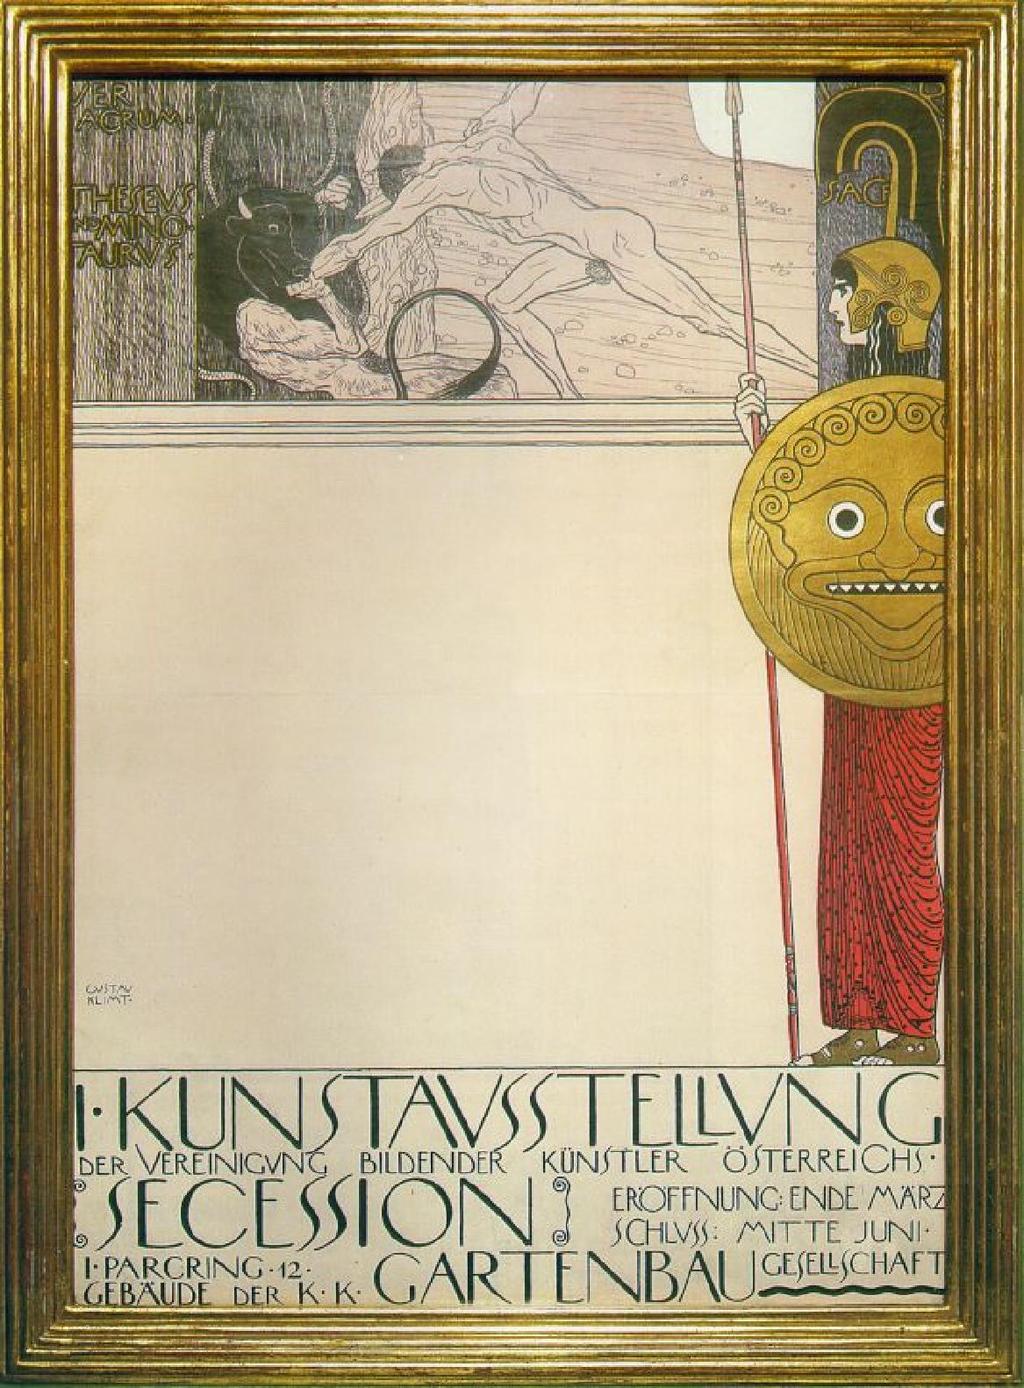 Gustav Klimt, 1898.